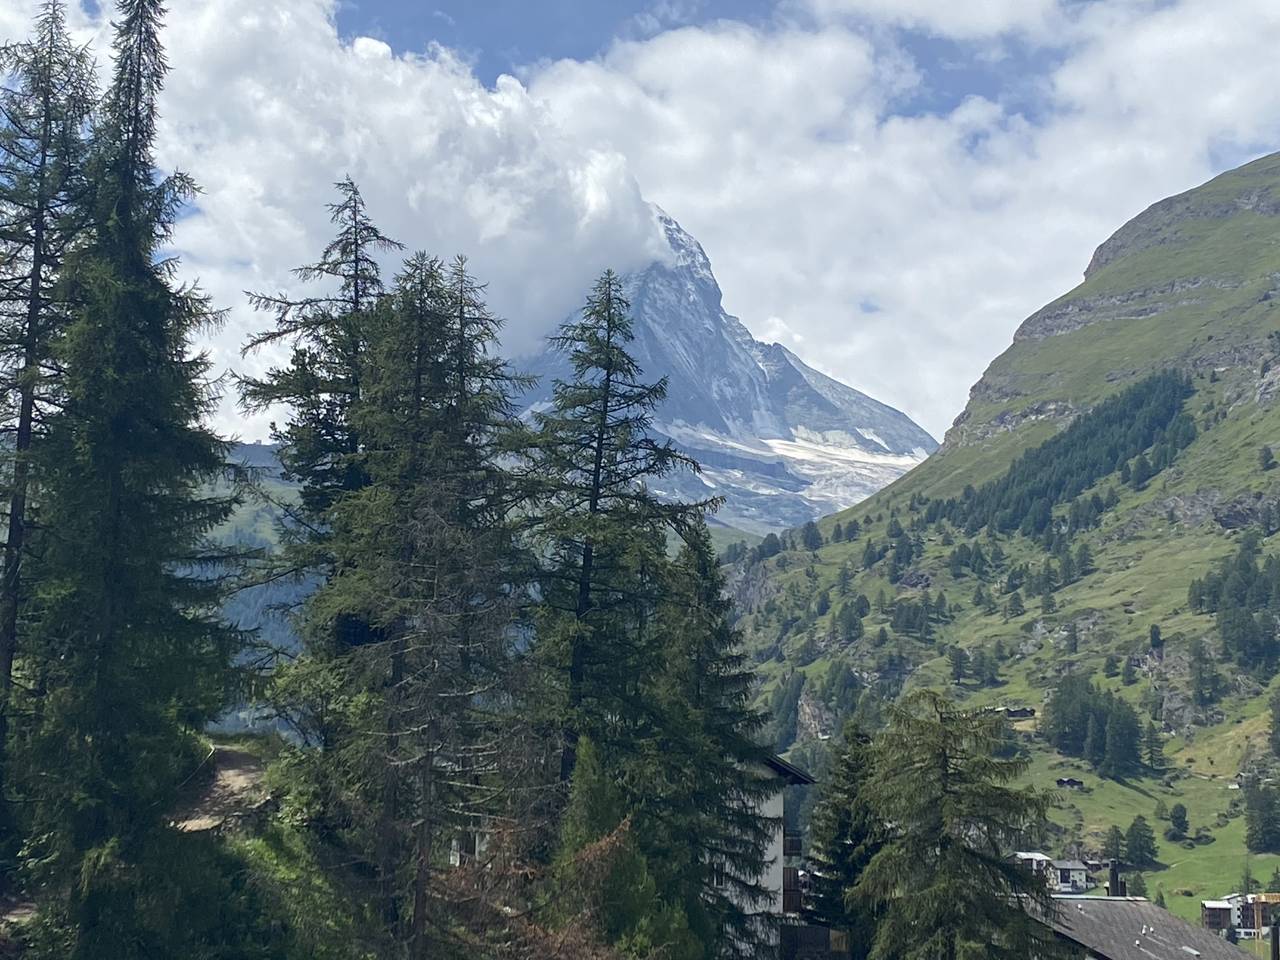 Görünürde Matterhorn